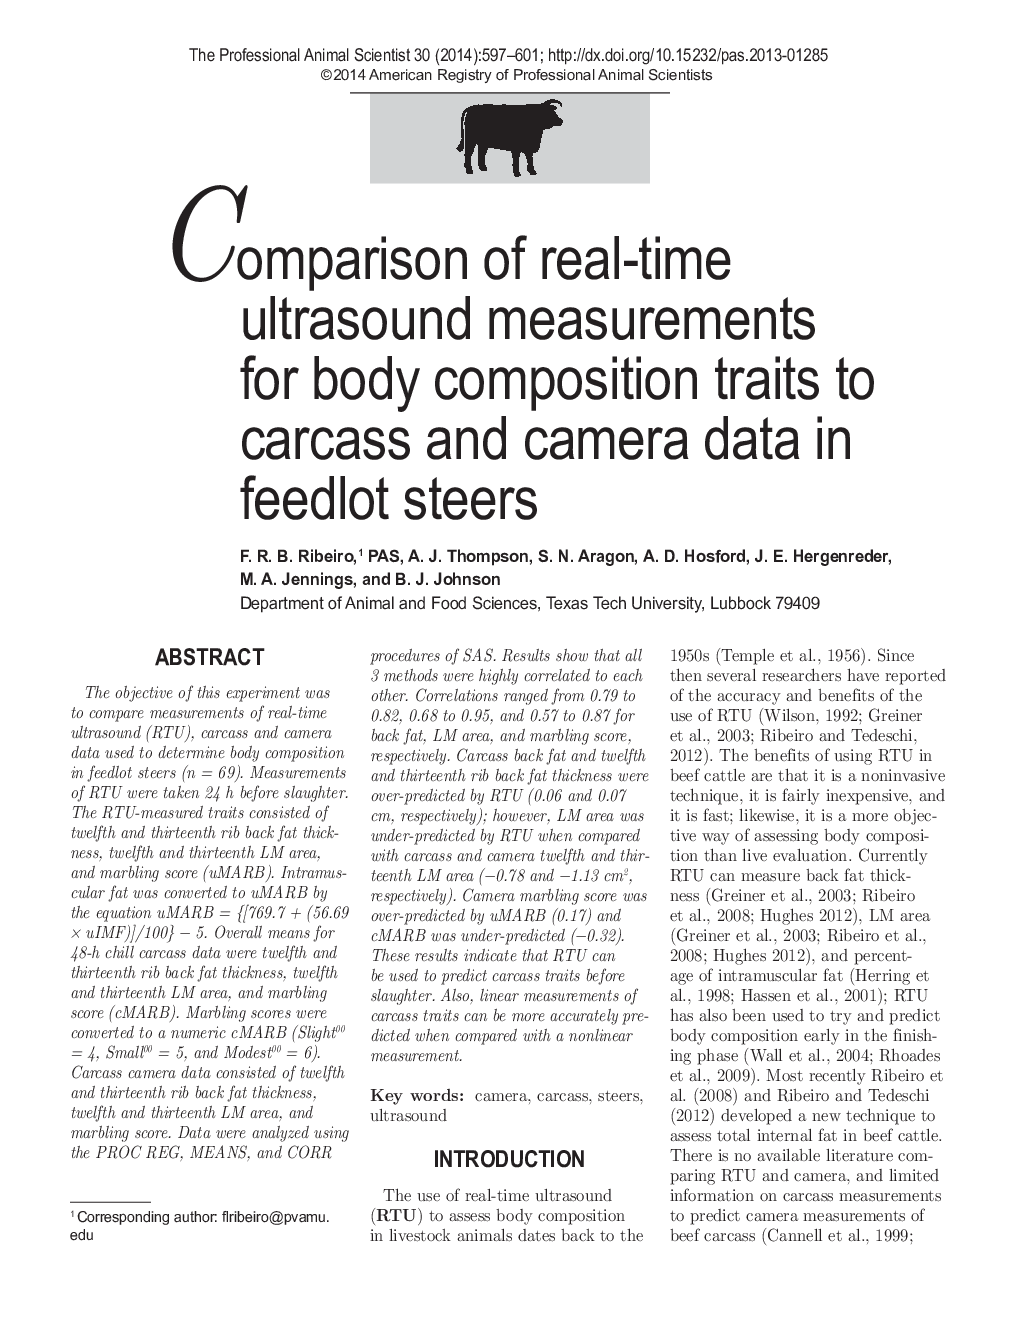 مقایسه اندازه گیری های اولتراسوند در زمان واقعی برای صفات ترکیب بدن به لاشه و دوربین داده در گوساله های پرواری 